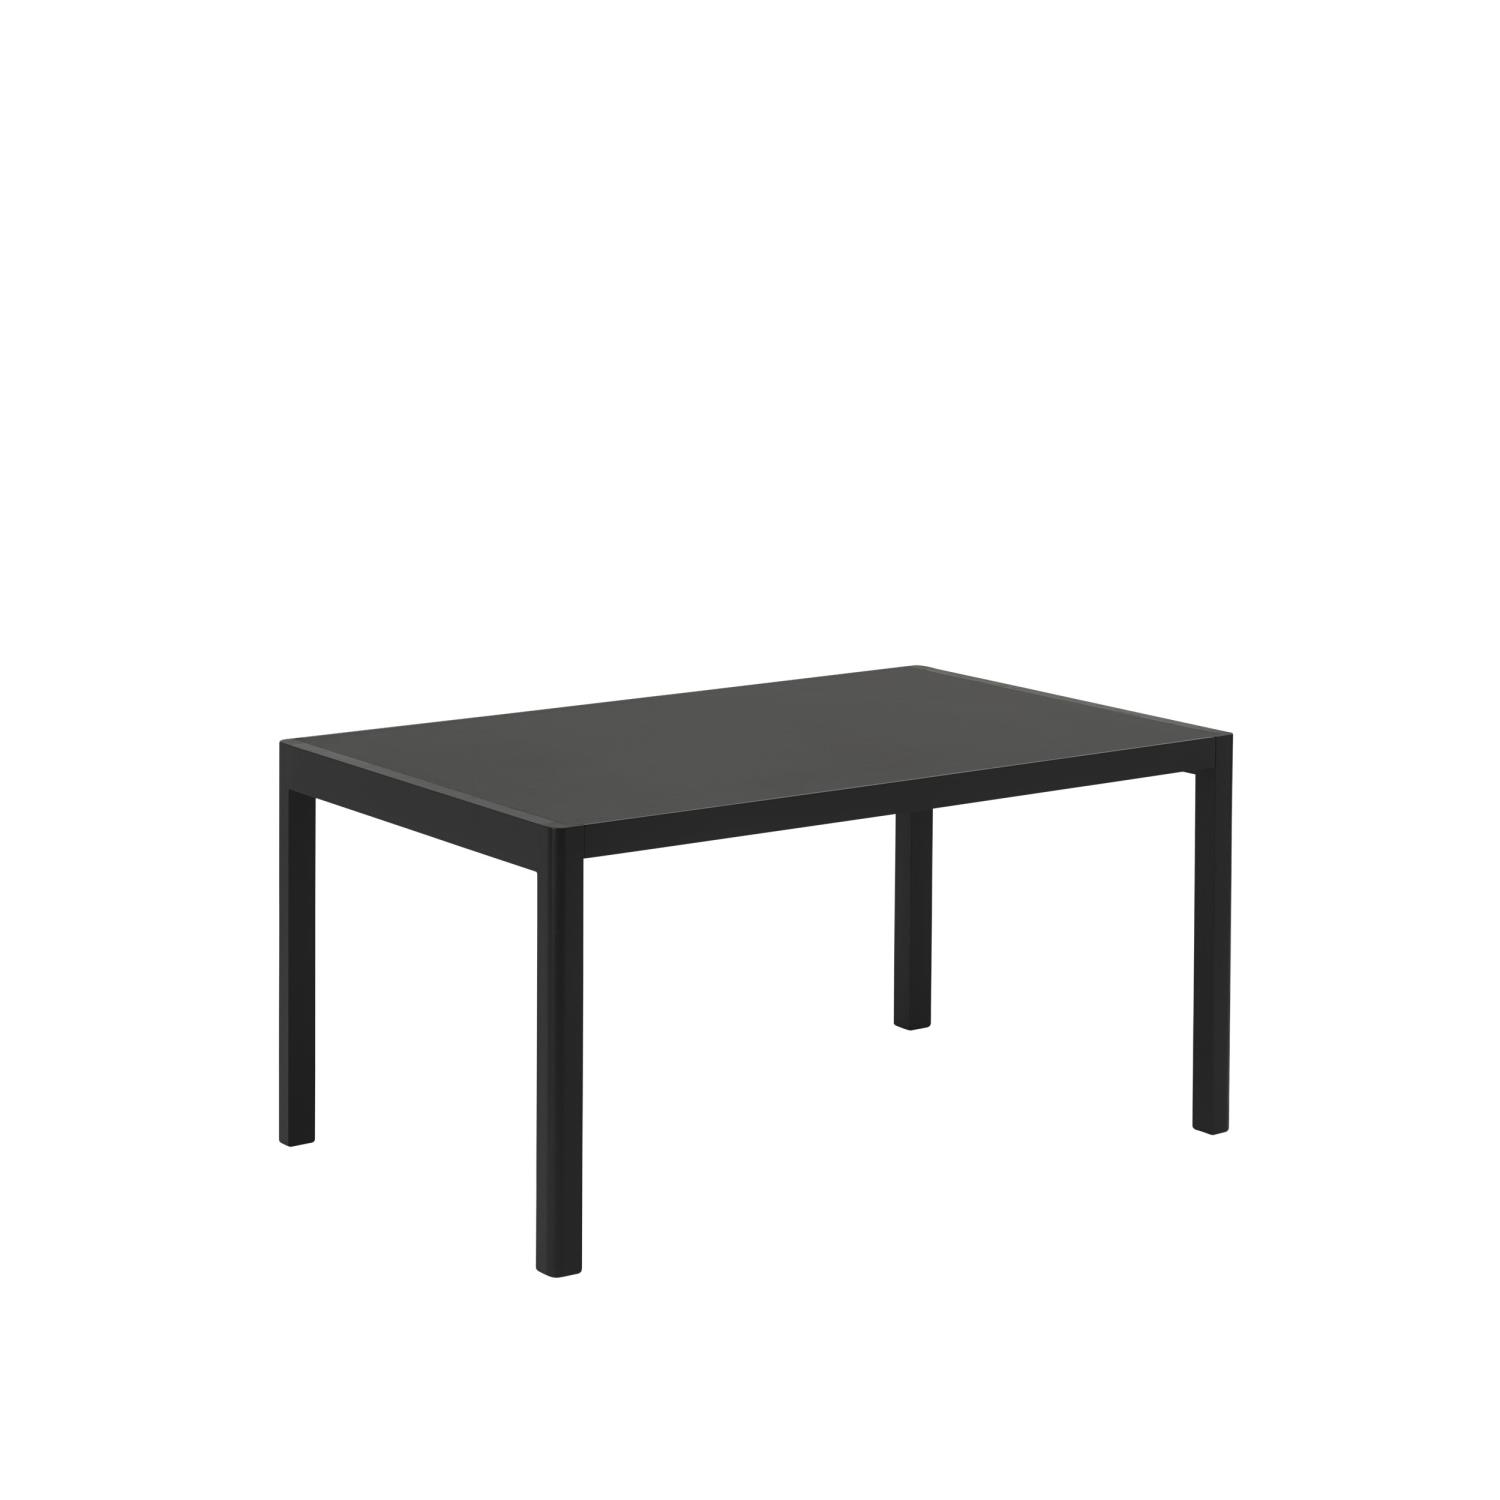 Muuto - Workshop Table - 140x92 - Black Linoleum and Black